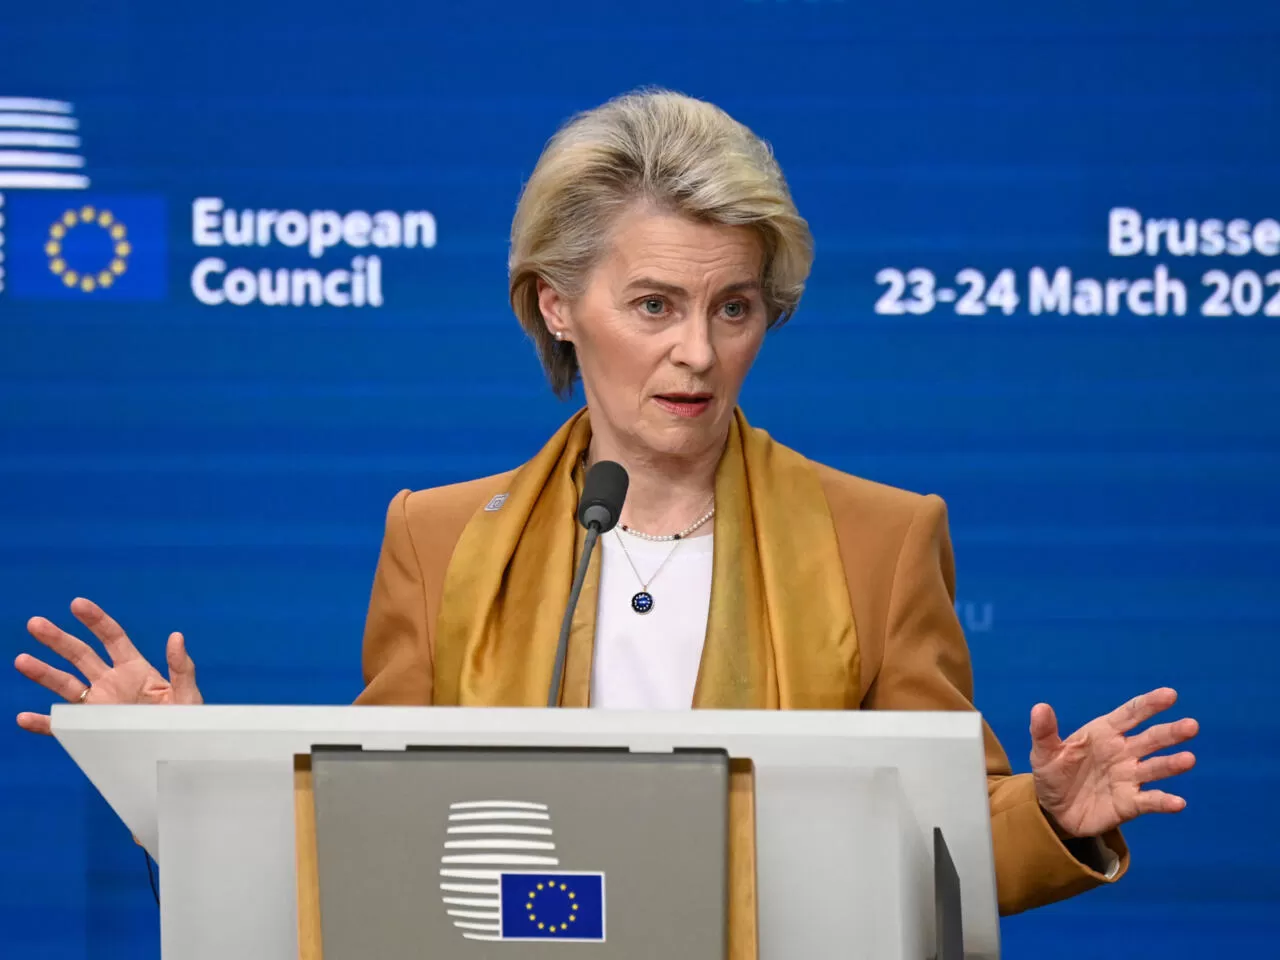 تعرض رئيسة المفوضية لموقف محرج لحظة لحظة إنتهائها من خطاب عن "وحدة أوروبا وقوتها"